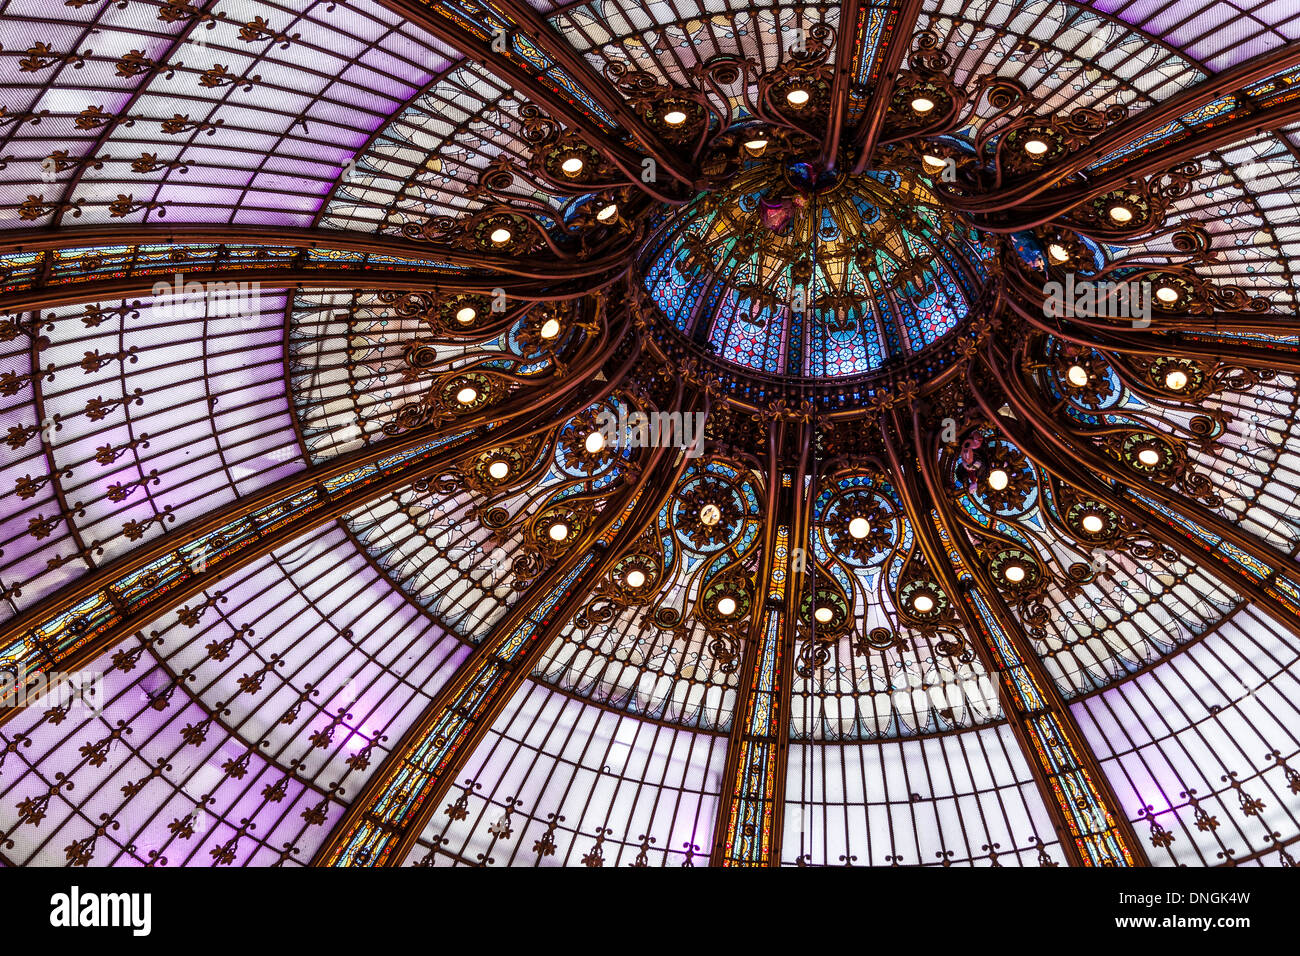 La cúpula de vidrio (construido en 1912) de los grandes almacenes Galeries Lafayette, París, Francia Foto de stock